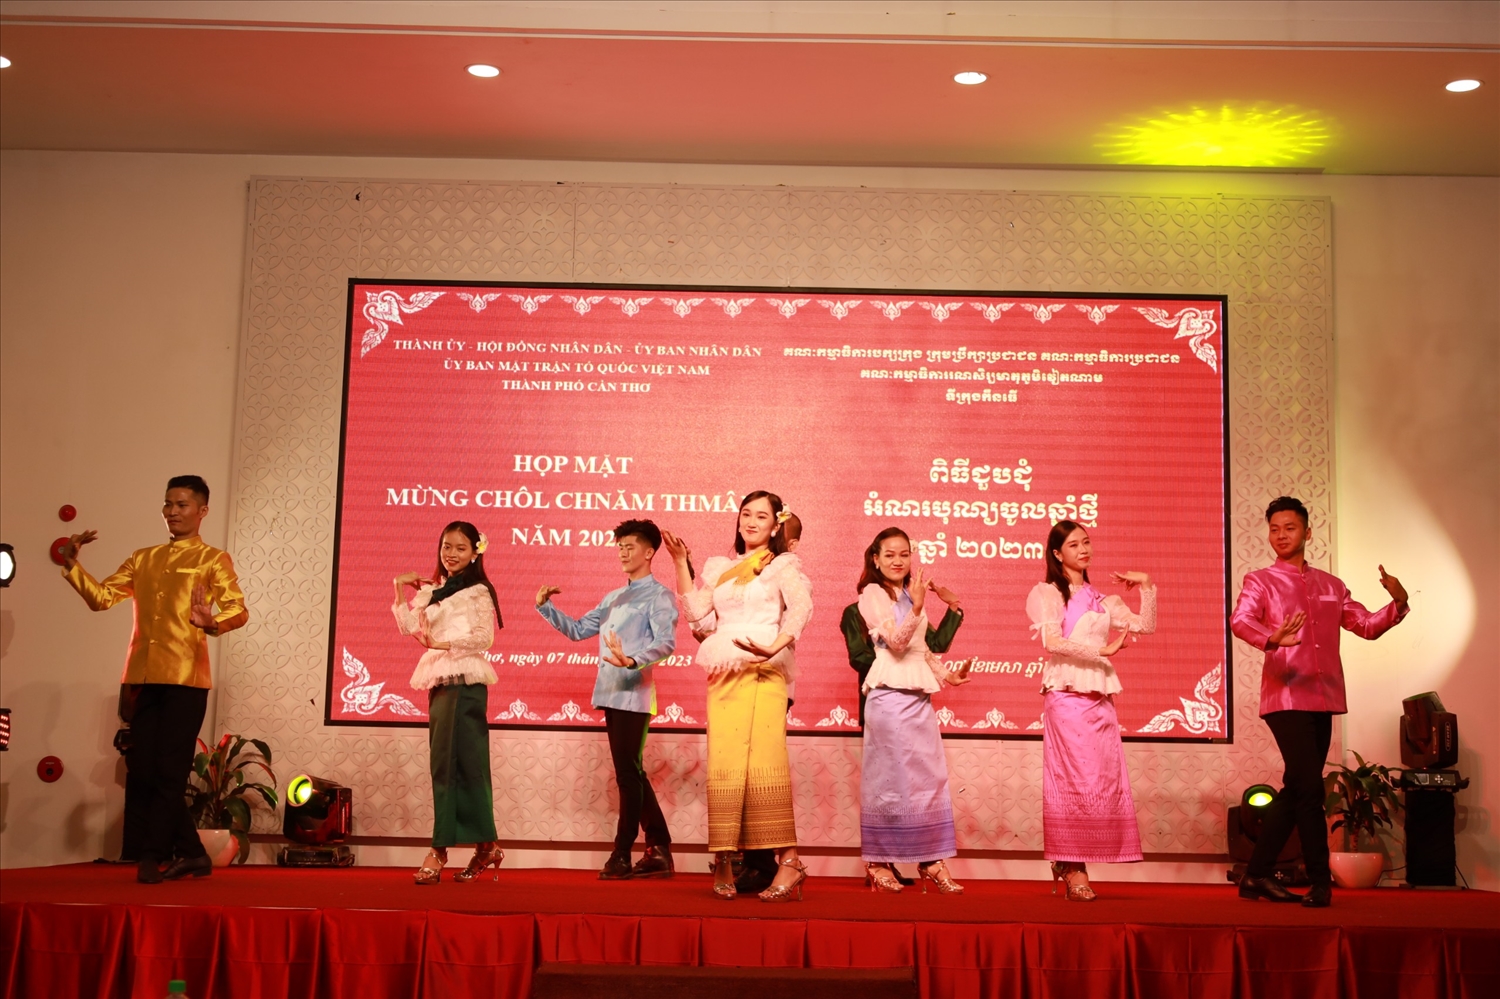 Bài ca đoàn kết được thực hiện với điệu múa Lâm thôn - mừng Chôl Chnăm Thmây 2023 